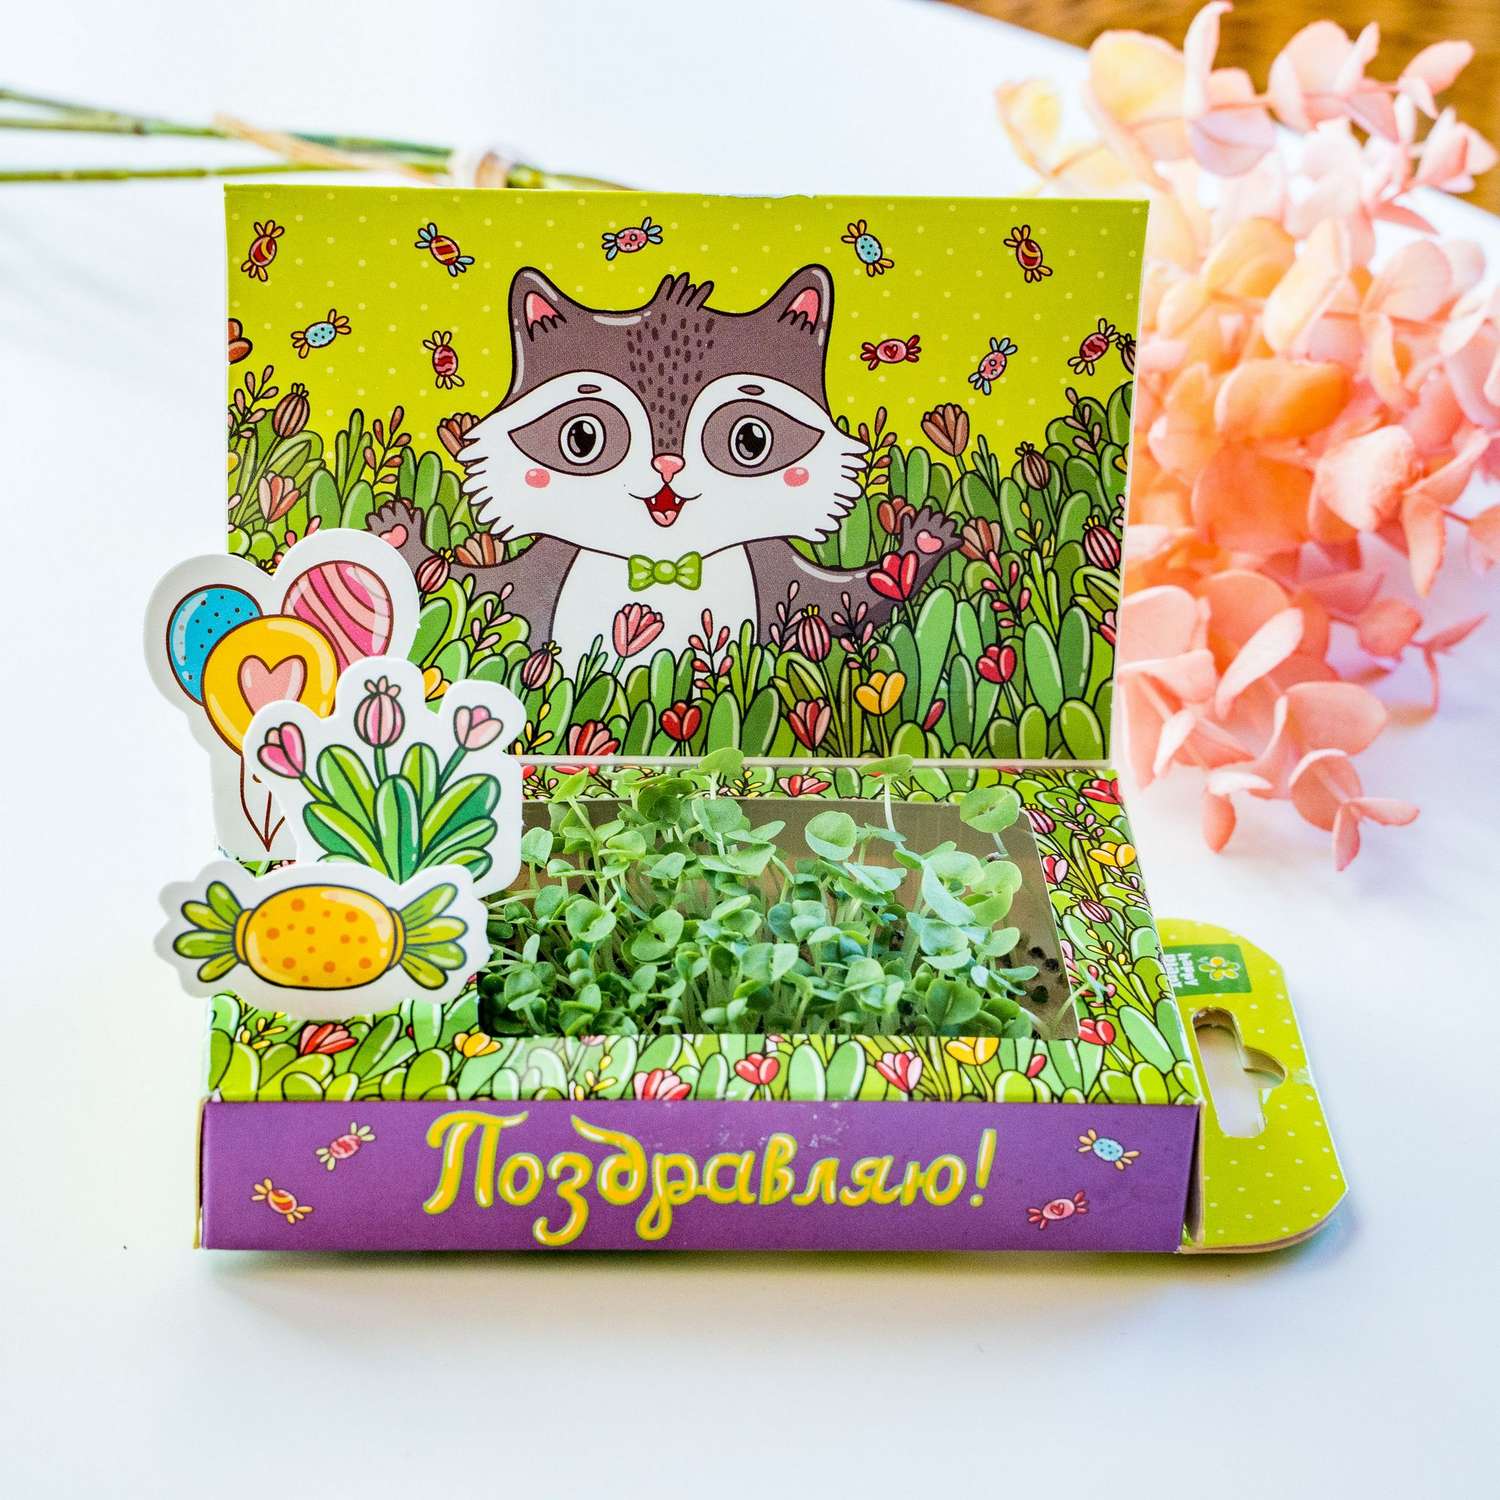 Набор для выращивания Happy Plant Вырасти сам микрозелень Живая открытка Поздравляю! - фото 4